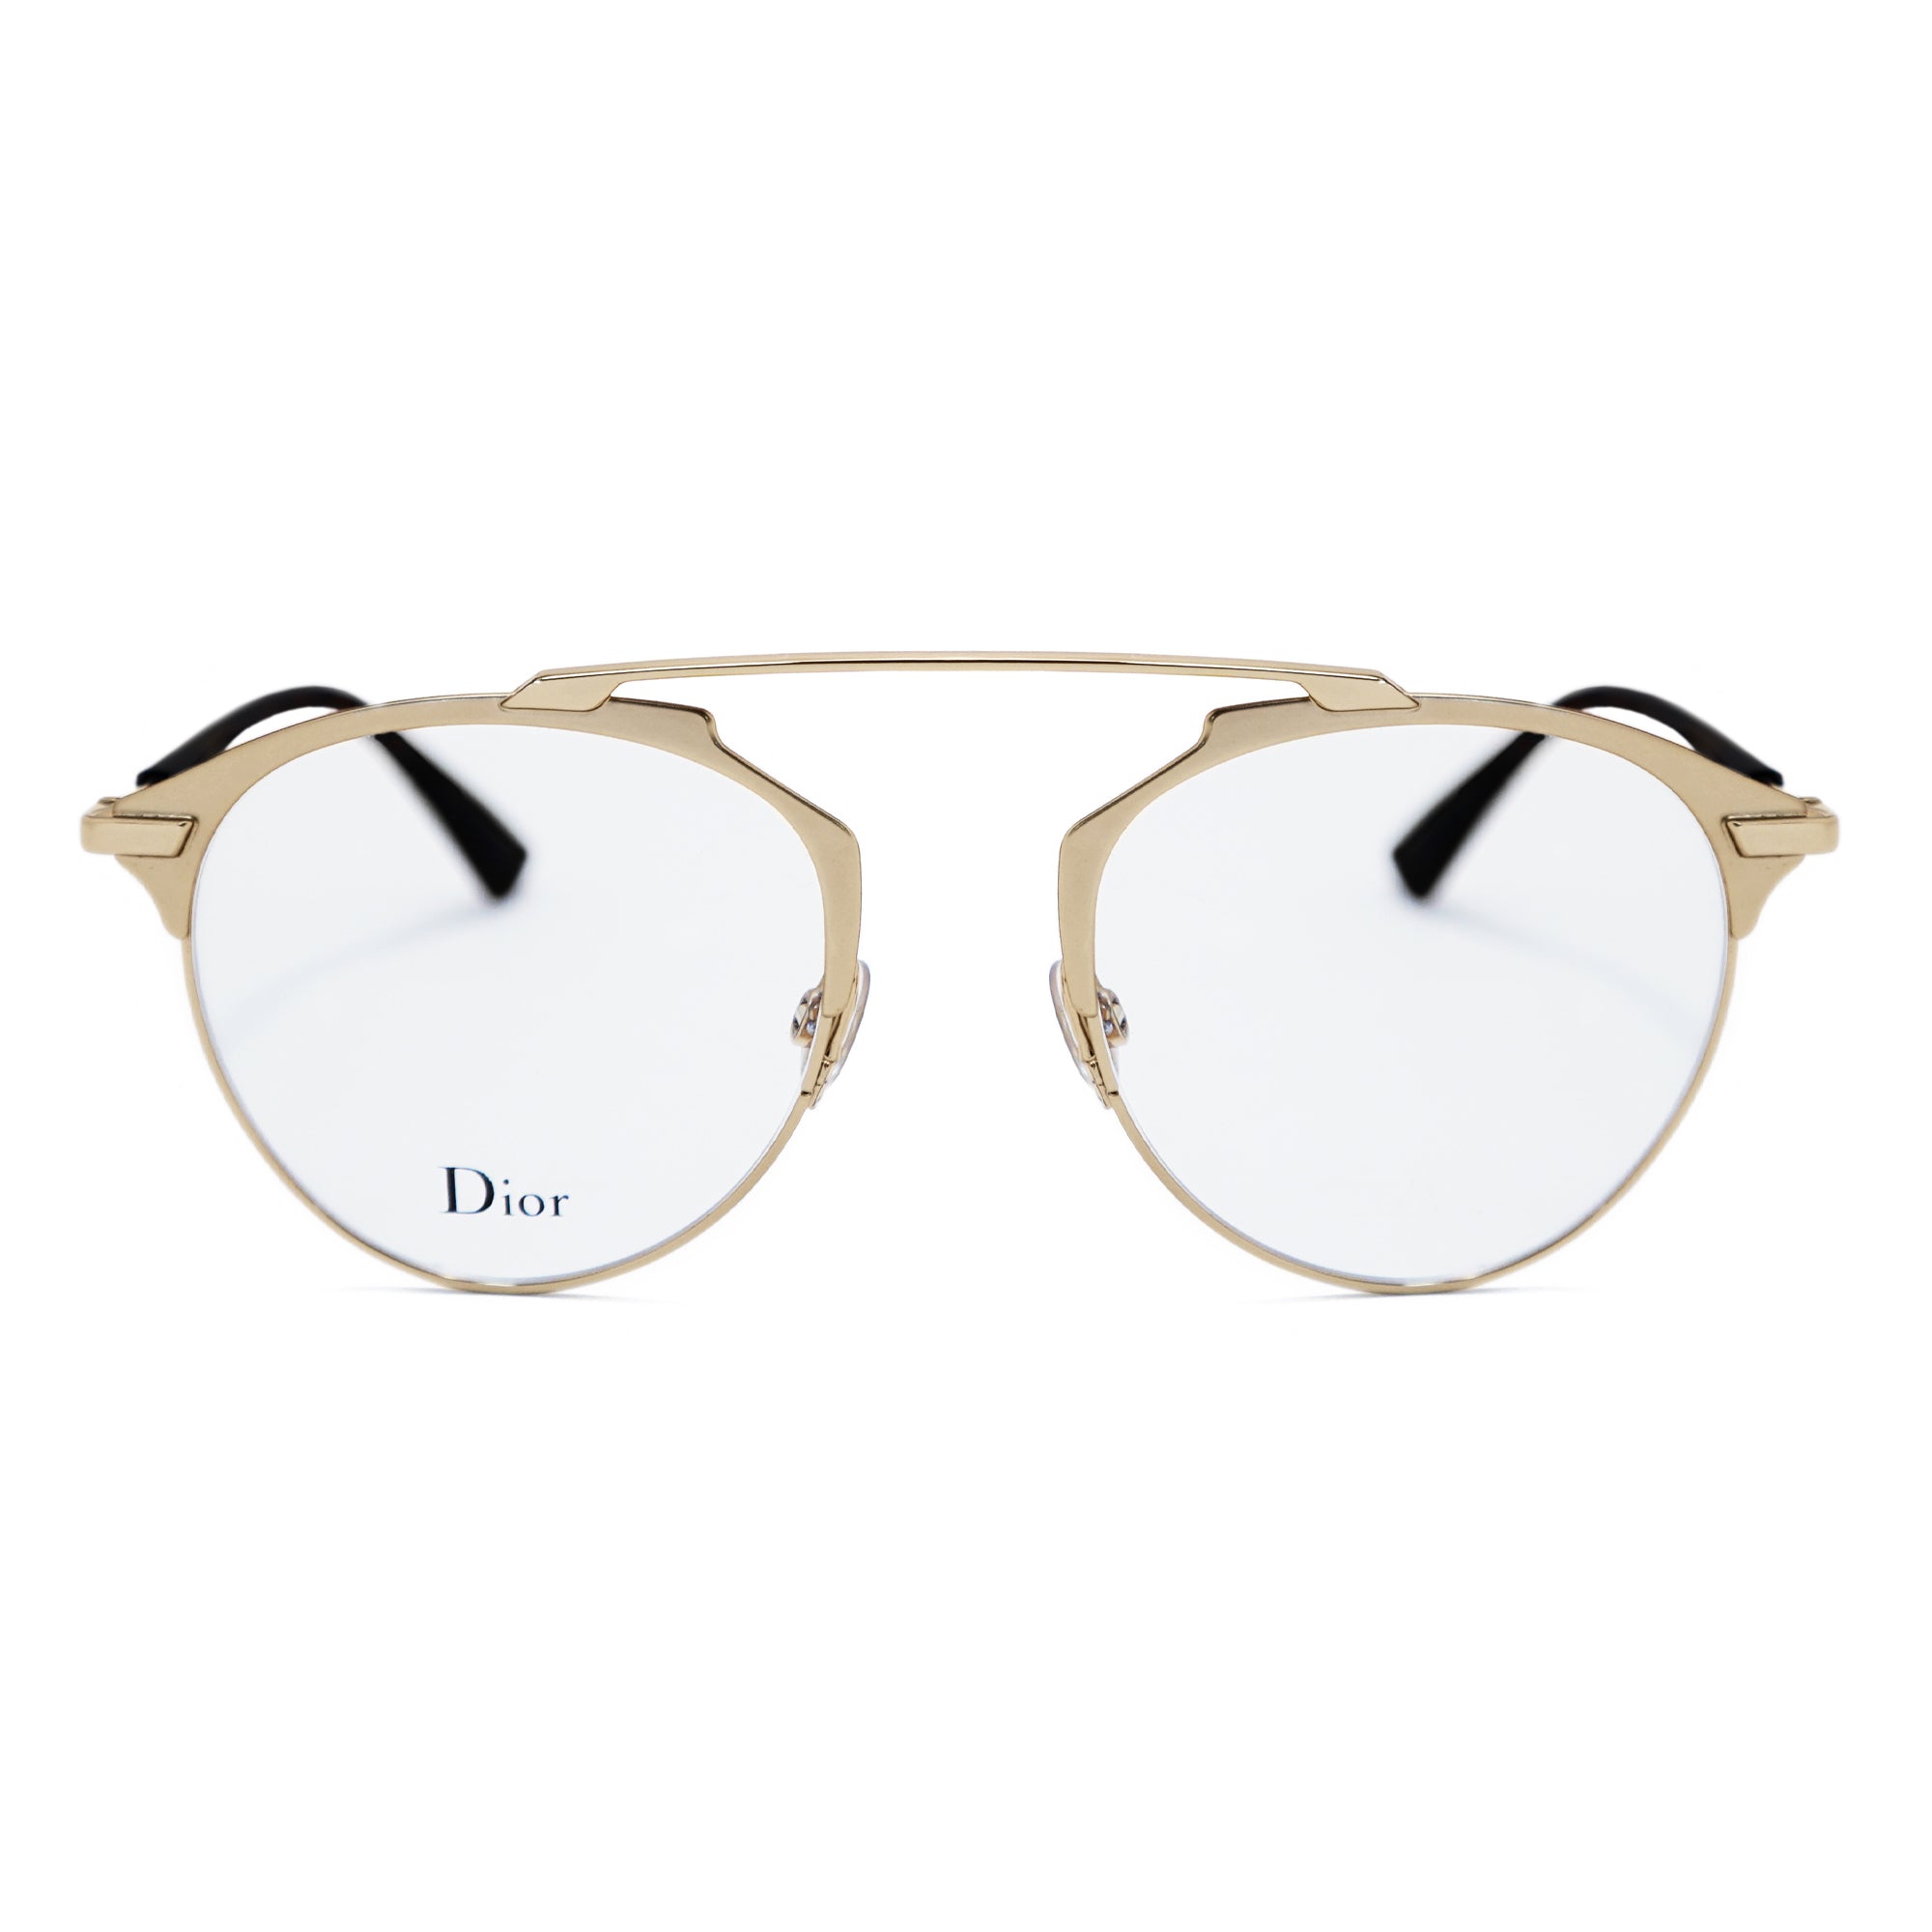 Christian Dior Round Glasses SoReal O J5G19 50